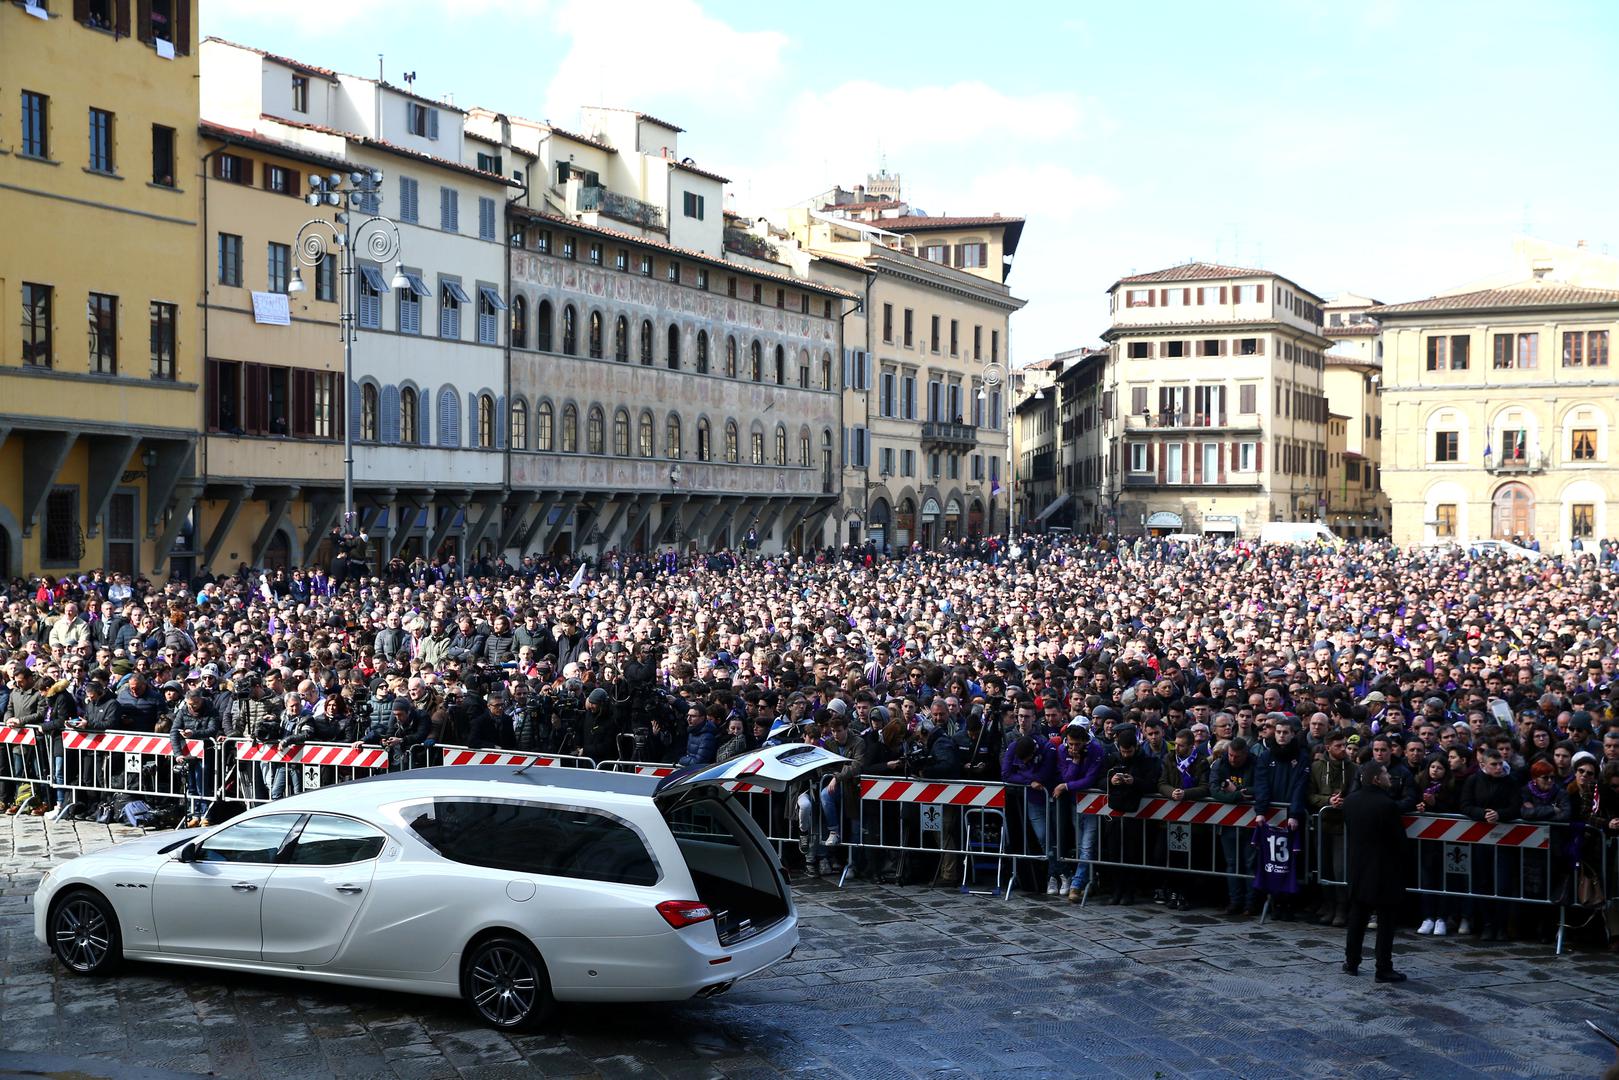 Ispred Bazilike di Santa Croce sat vremena ranije bilo je tisuću ljudi, a na kraju se sakupilo i 10.000 ljudi.

